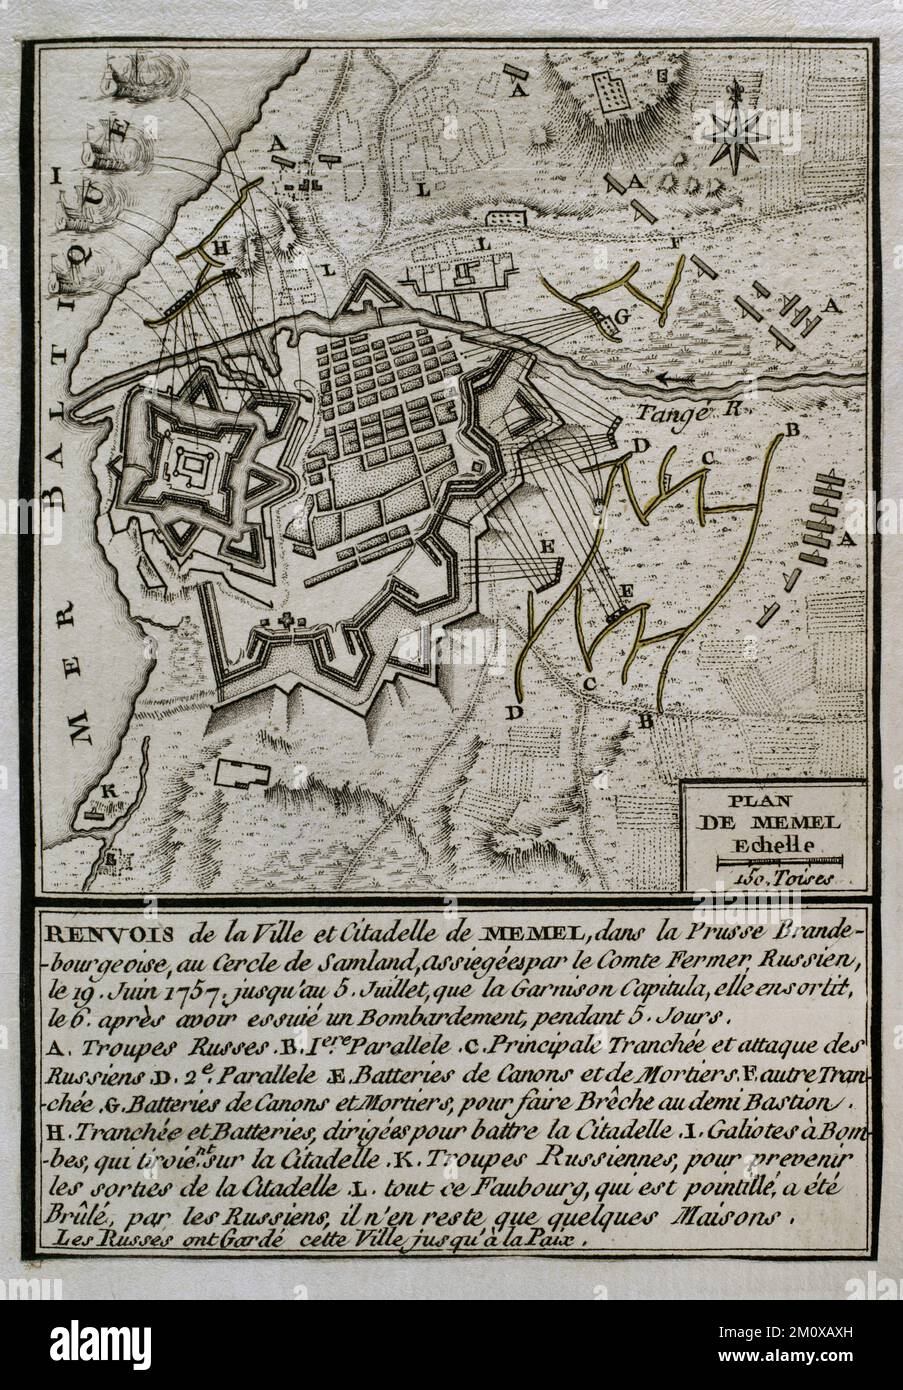 7 Jahre Krieg (1756-1763). Karte des russischen Bombenanschlags auf Memel, 1757. Am 19. Juni 1757 belagerte die russische Armee unter dem Kommando von Feldmarschall Stepan Fjodorovich Apraksin die Stadt, um eine der stärksten Festungen Preußen zu erobern. Nach fünf Tagen schweren Artilleriefeuers gelang es den russischen Truppen, sie anzugreifen. Die Garnison kapitulierte am 6. Juli und wurde von den Russen für den Rest des Krieges eingenommen. Memel wurde von den Russen als Basis benutzt, um Ostpreußen zu erobern. Veröffentlicht 1765 vom Kartografen Jean de Beaurain (1696-1771) als Illustration seiner großen Karte Stockfoto